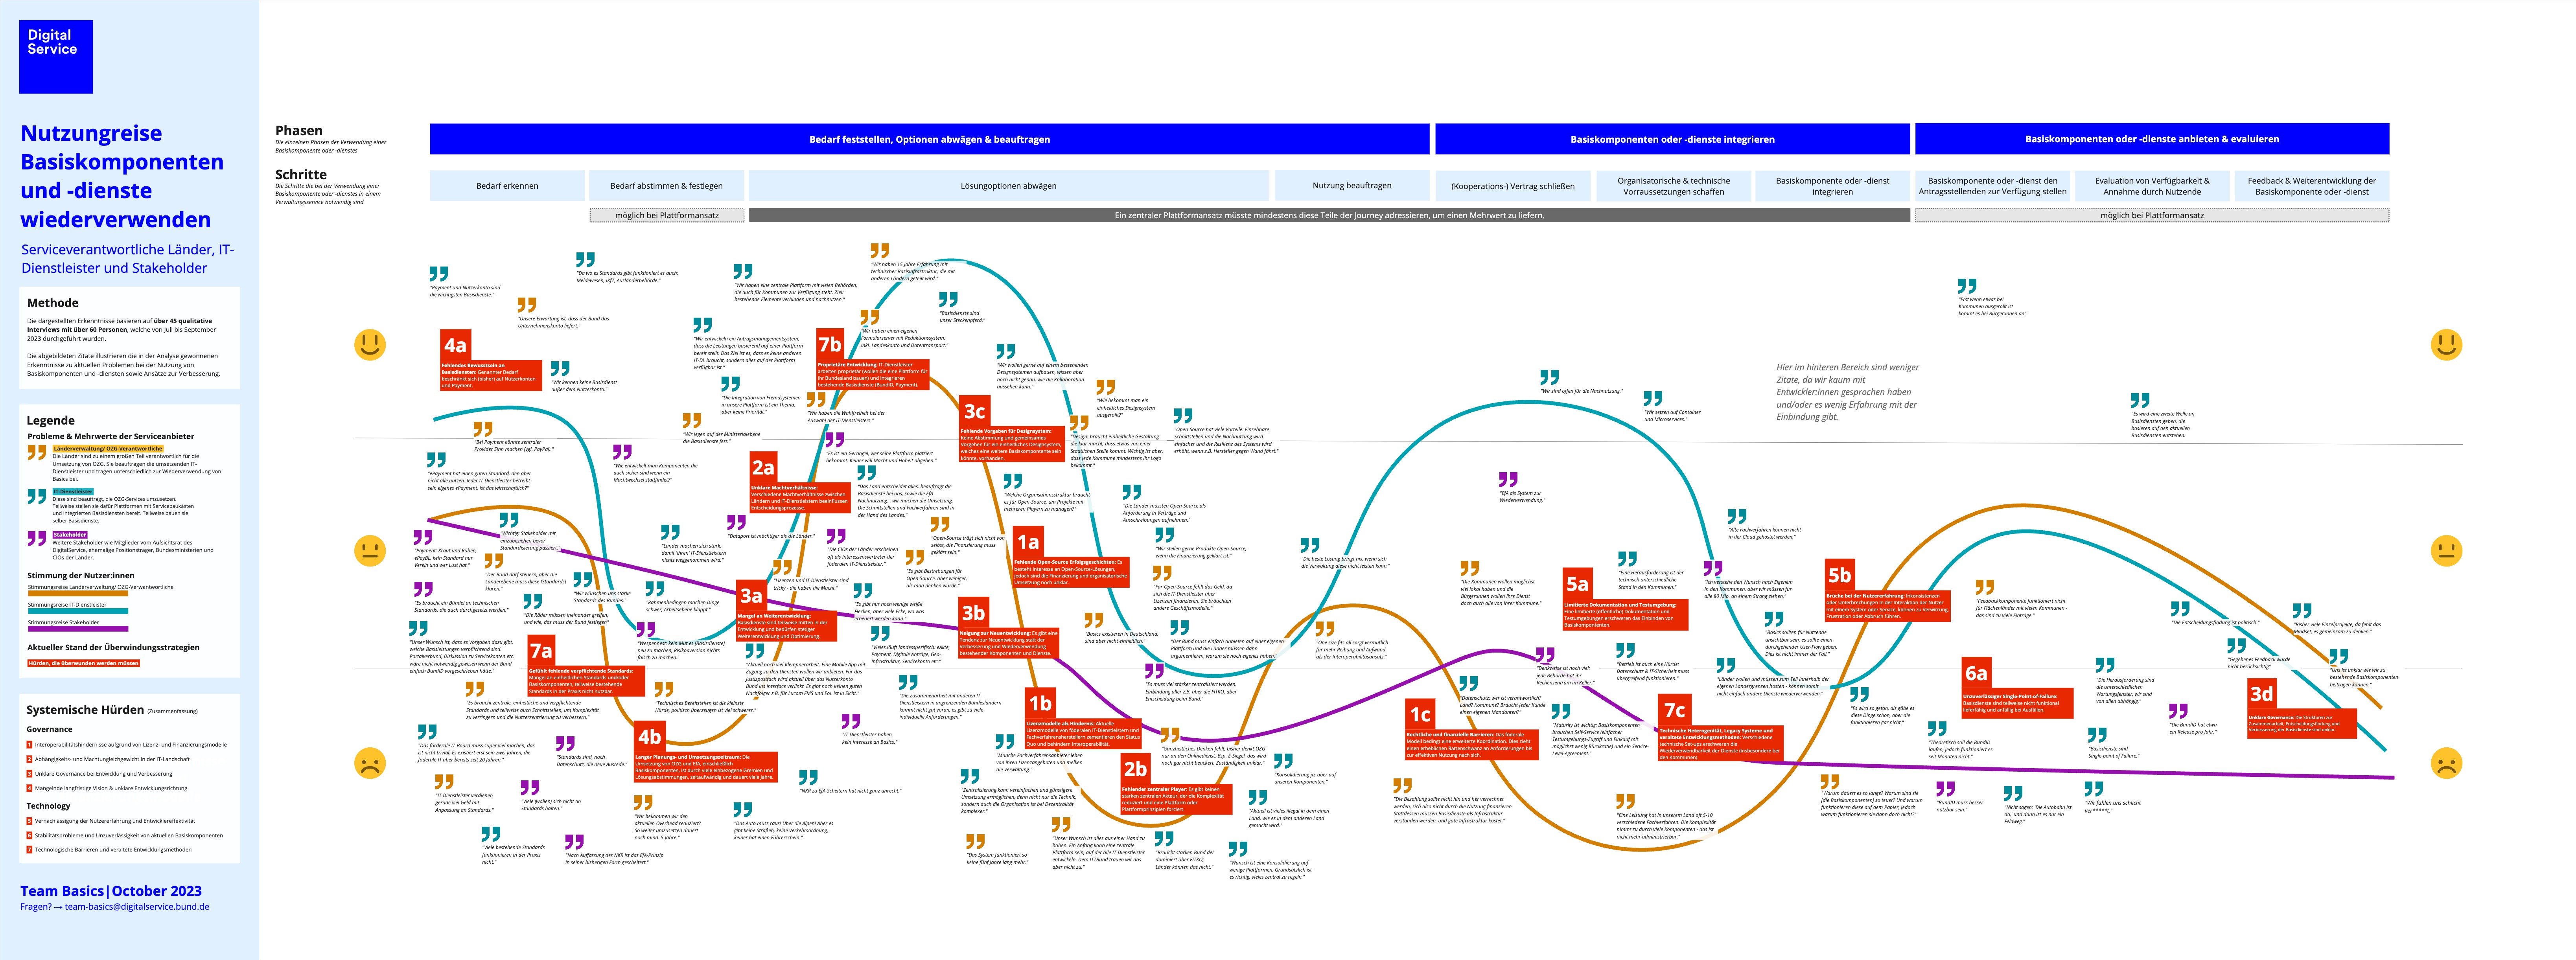 Visualisierung der Nutzungsreise Basiskomponenten und Basisdienste; Link zur ausführlichen Bildbeschreibung in der Bildunterschrift